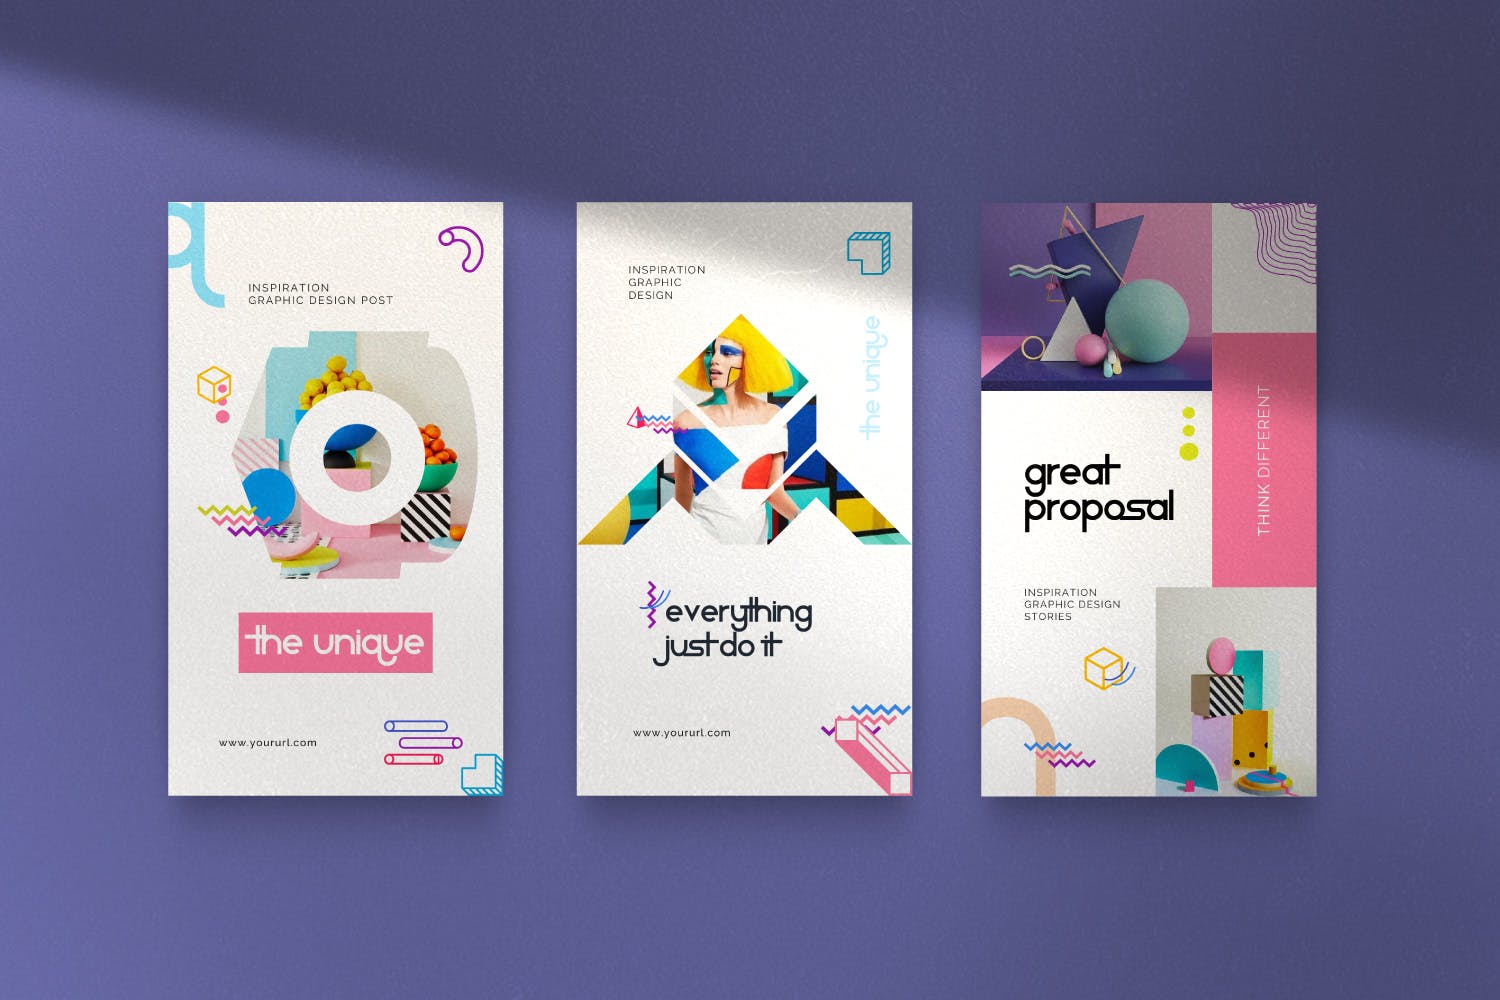 创意几何图形设计风格社交媒体素材包v2 Geometri – Pack 2 Social Media Kit Post+Stories插图(7)